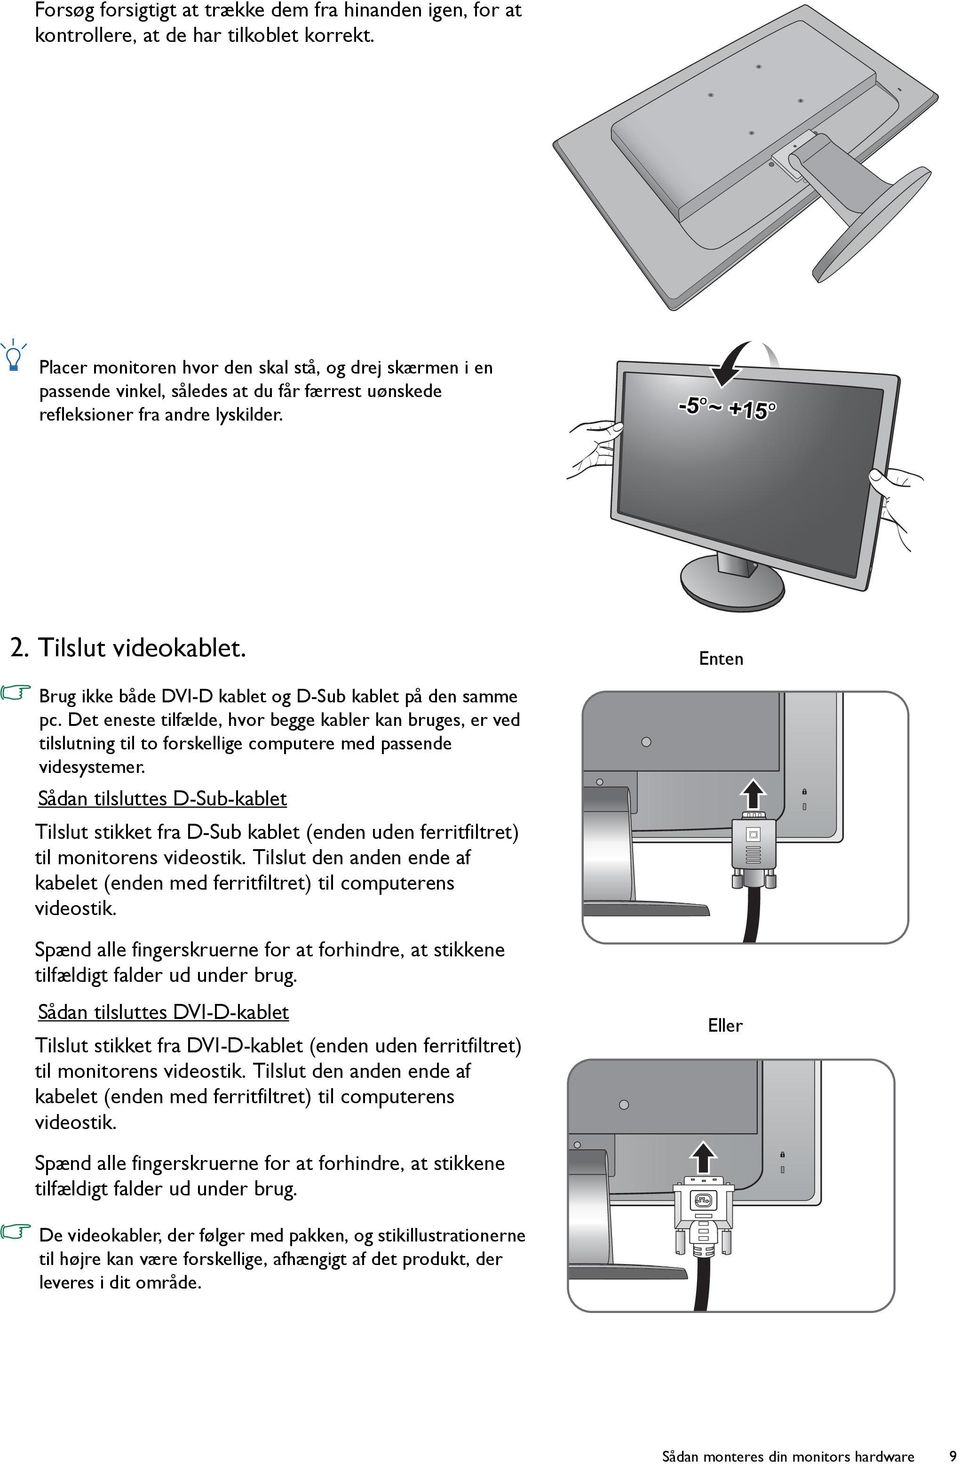 Enten Brug ikke både DVI-D kablet og D-Sub kablet på den samme pc. Det eneste tilfælde, hvor begge kabler kan bruges, er ved tilslutning til to forskellige computere med passende videsystemer.